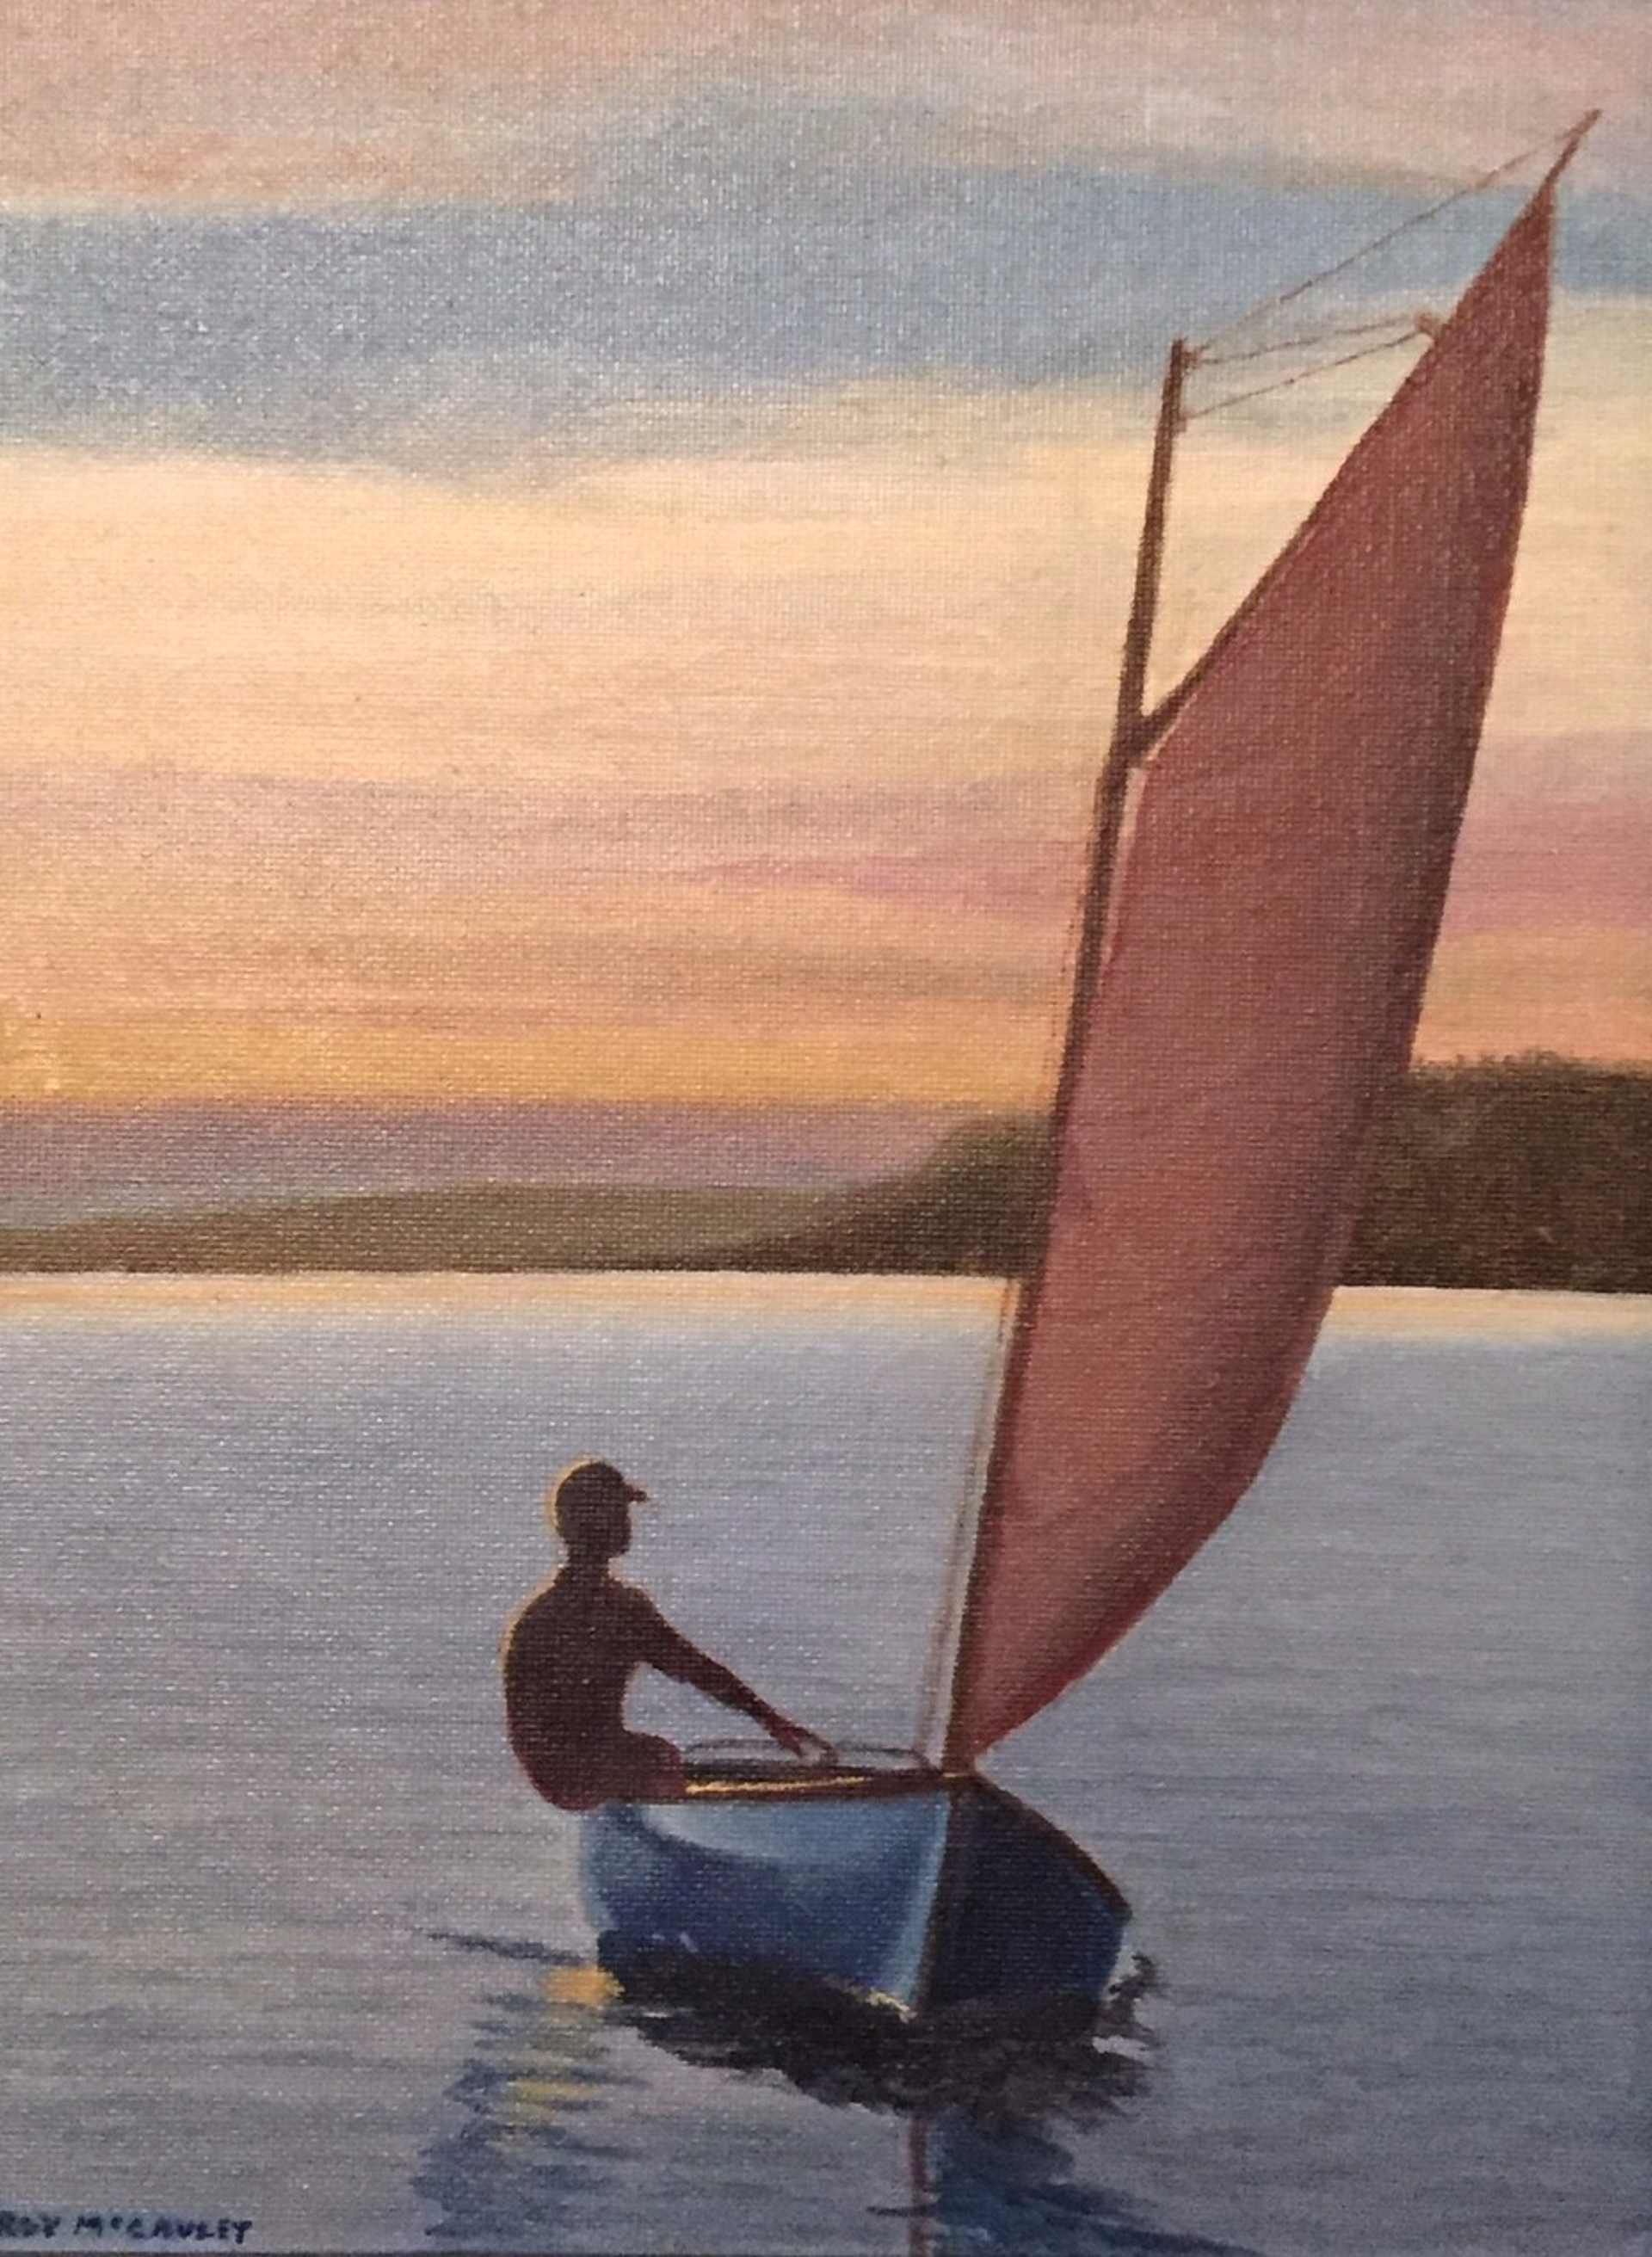 Sunset Sail by Roy McCauley